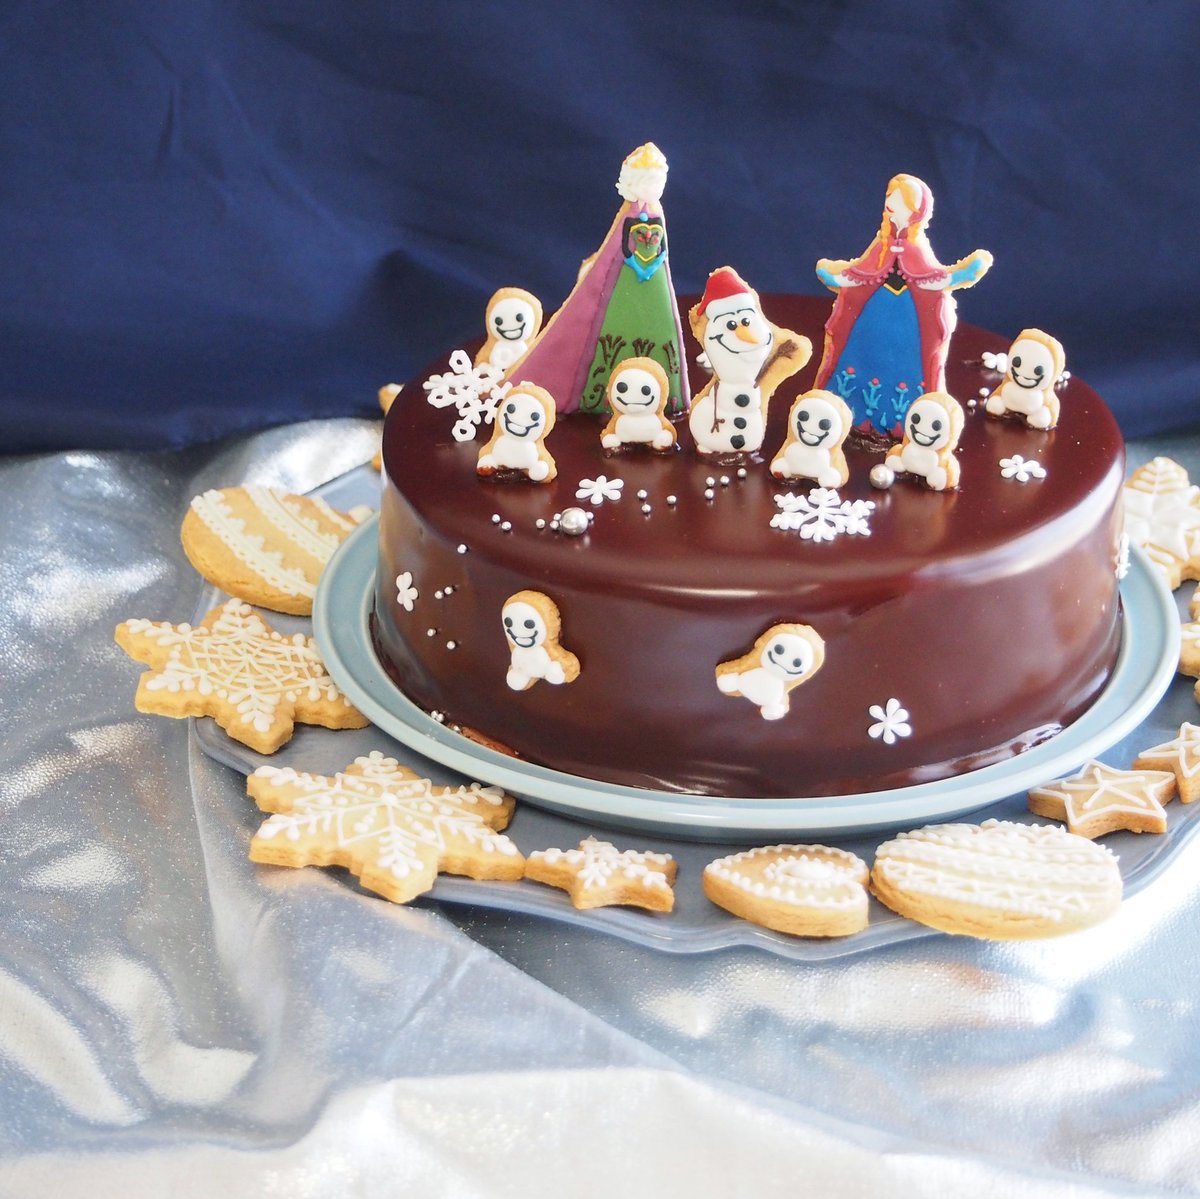 上岡麻美 En Twitter アナと雪の女王のデコレーションケーキ 飾りはアイシングクッキーです